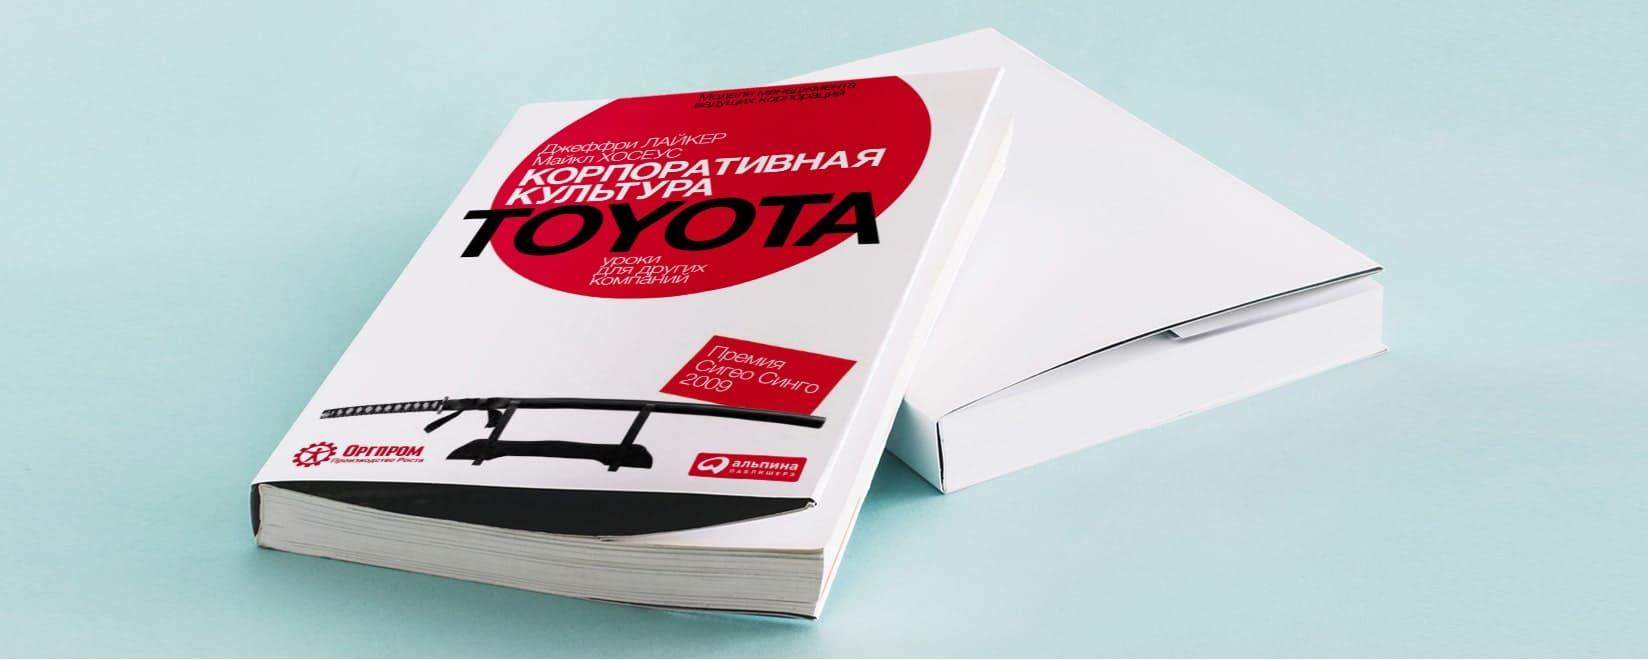 Hurma Blog: Корпоративная культура Toyota: уроки для других компаний